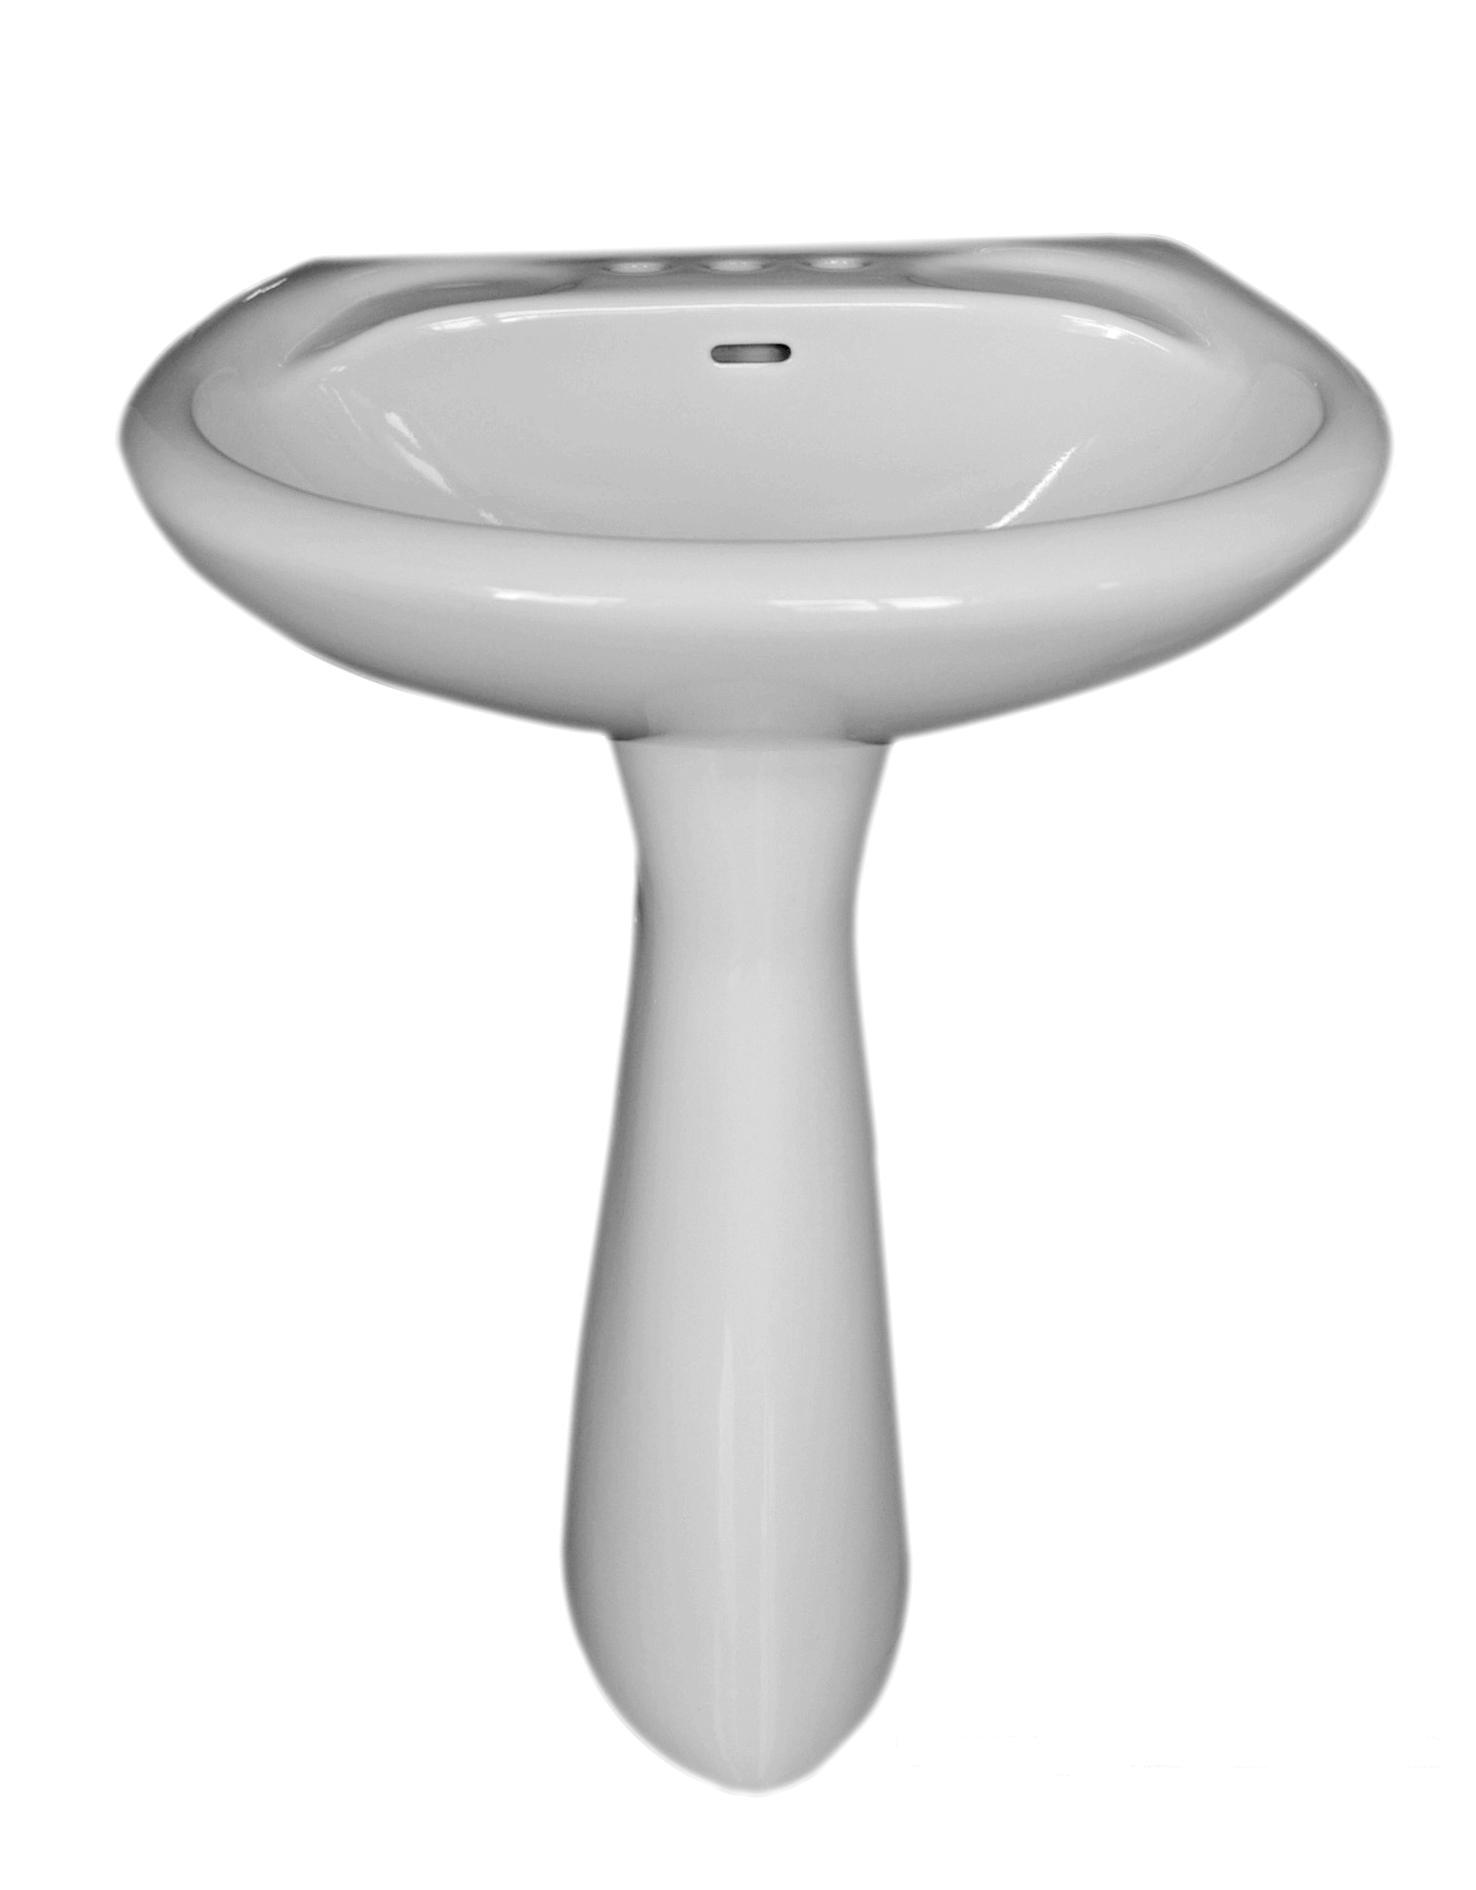  Pedestal Lavatory (Piédestal toilettes)